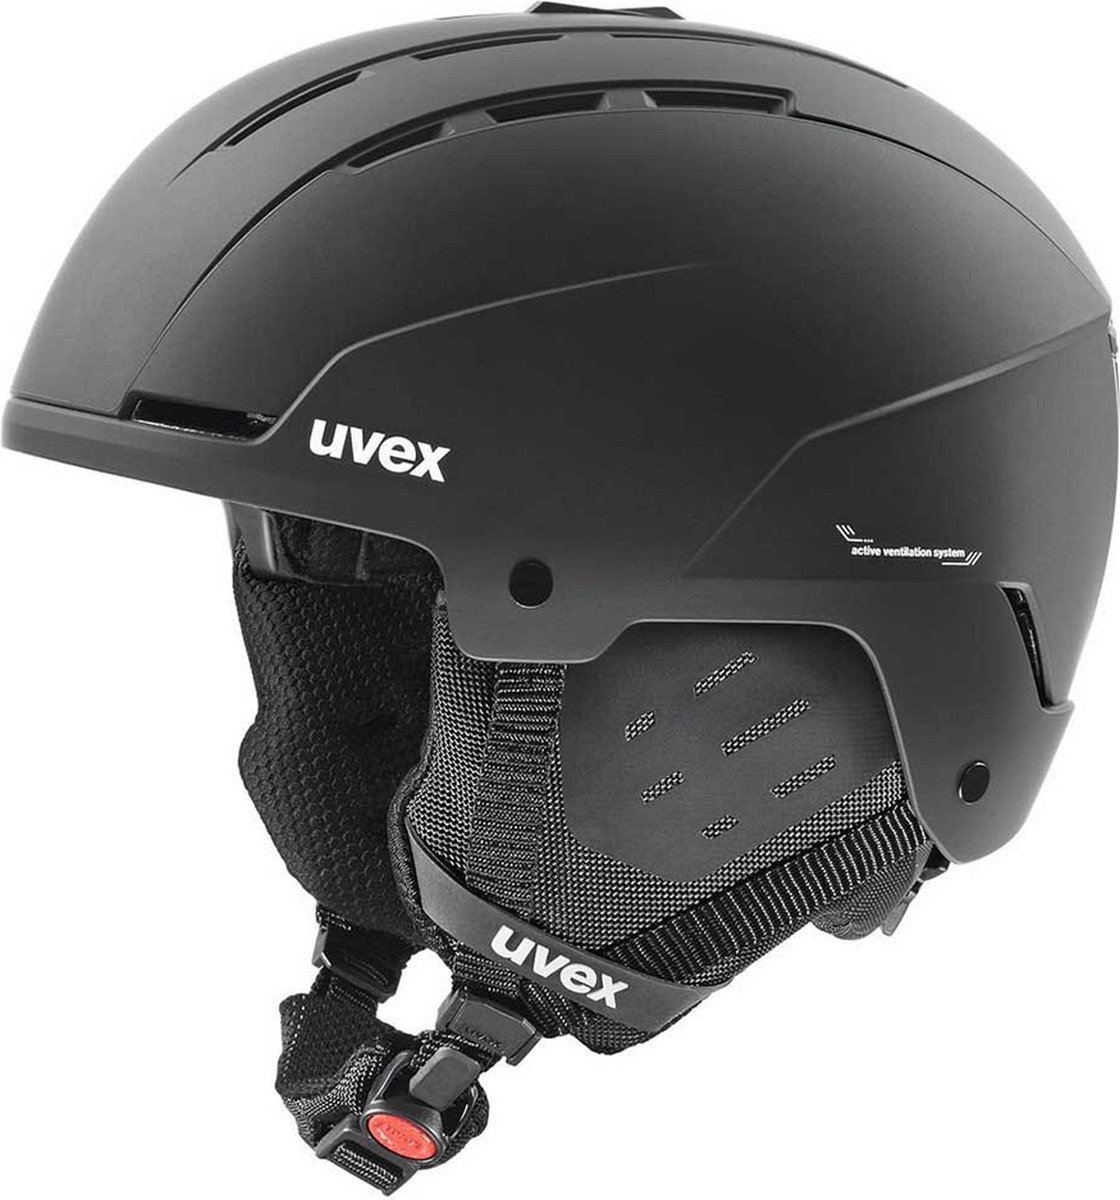 Uvex skihelm Stance Zwart - Maat 51-55